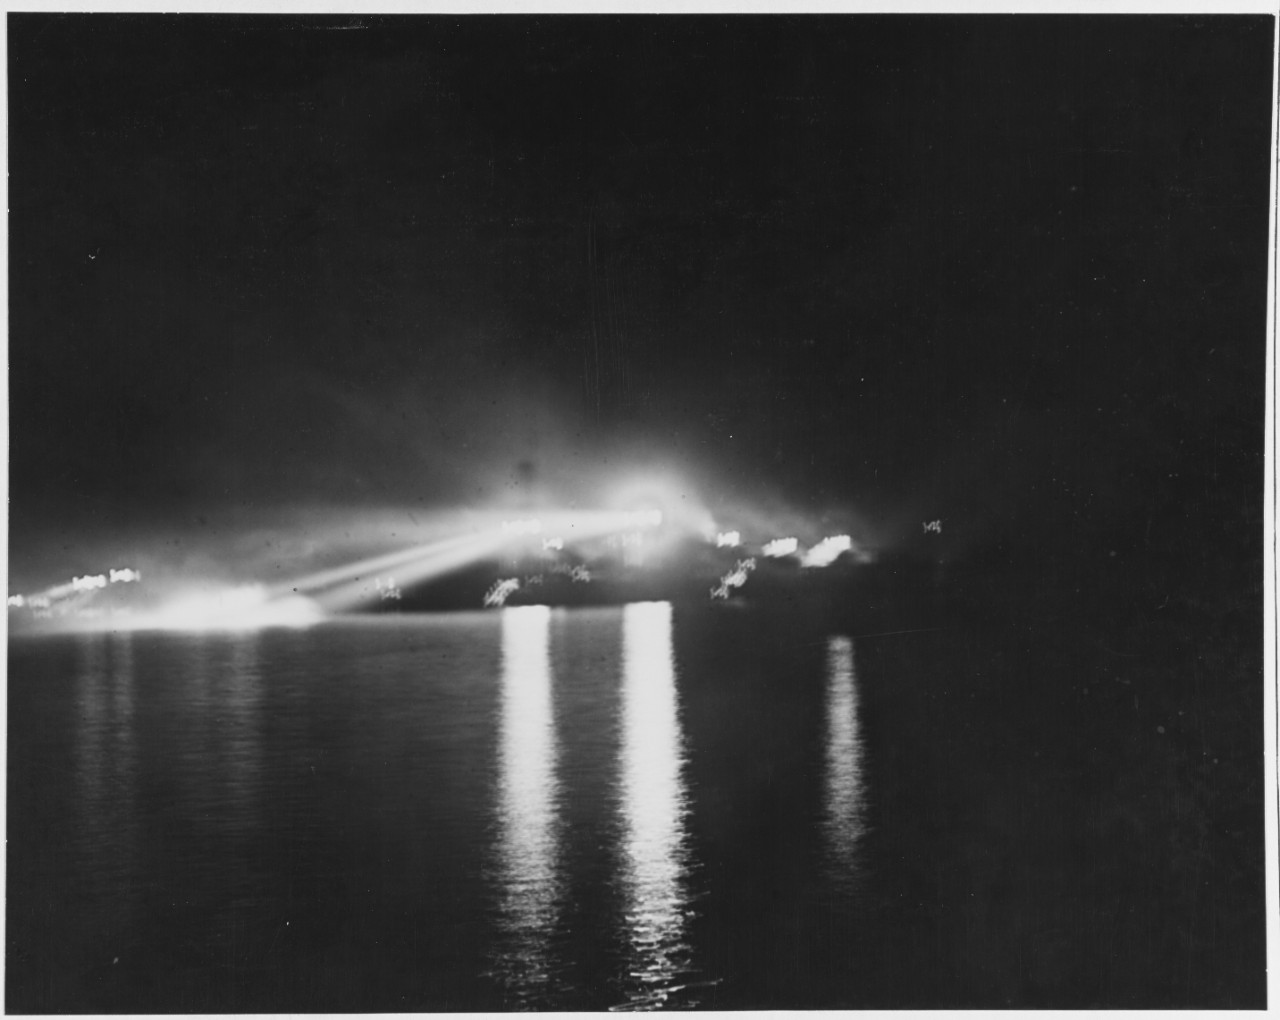 Searchlights probably at Guantanamo Bay, Cuba, 1921